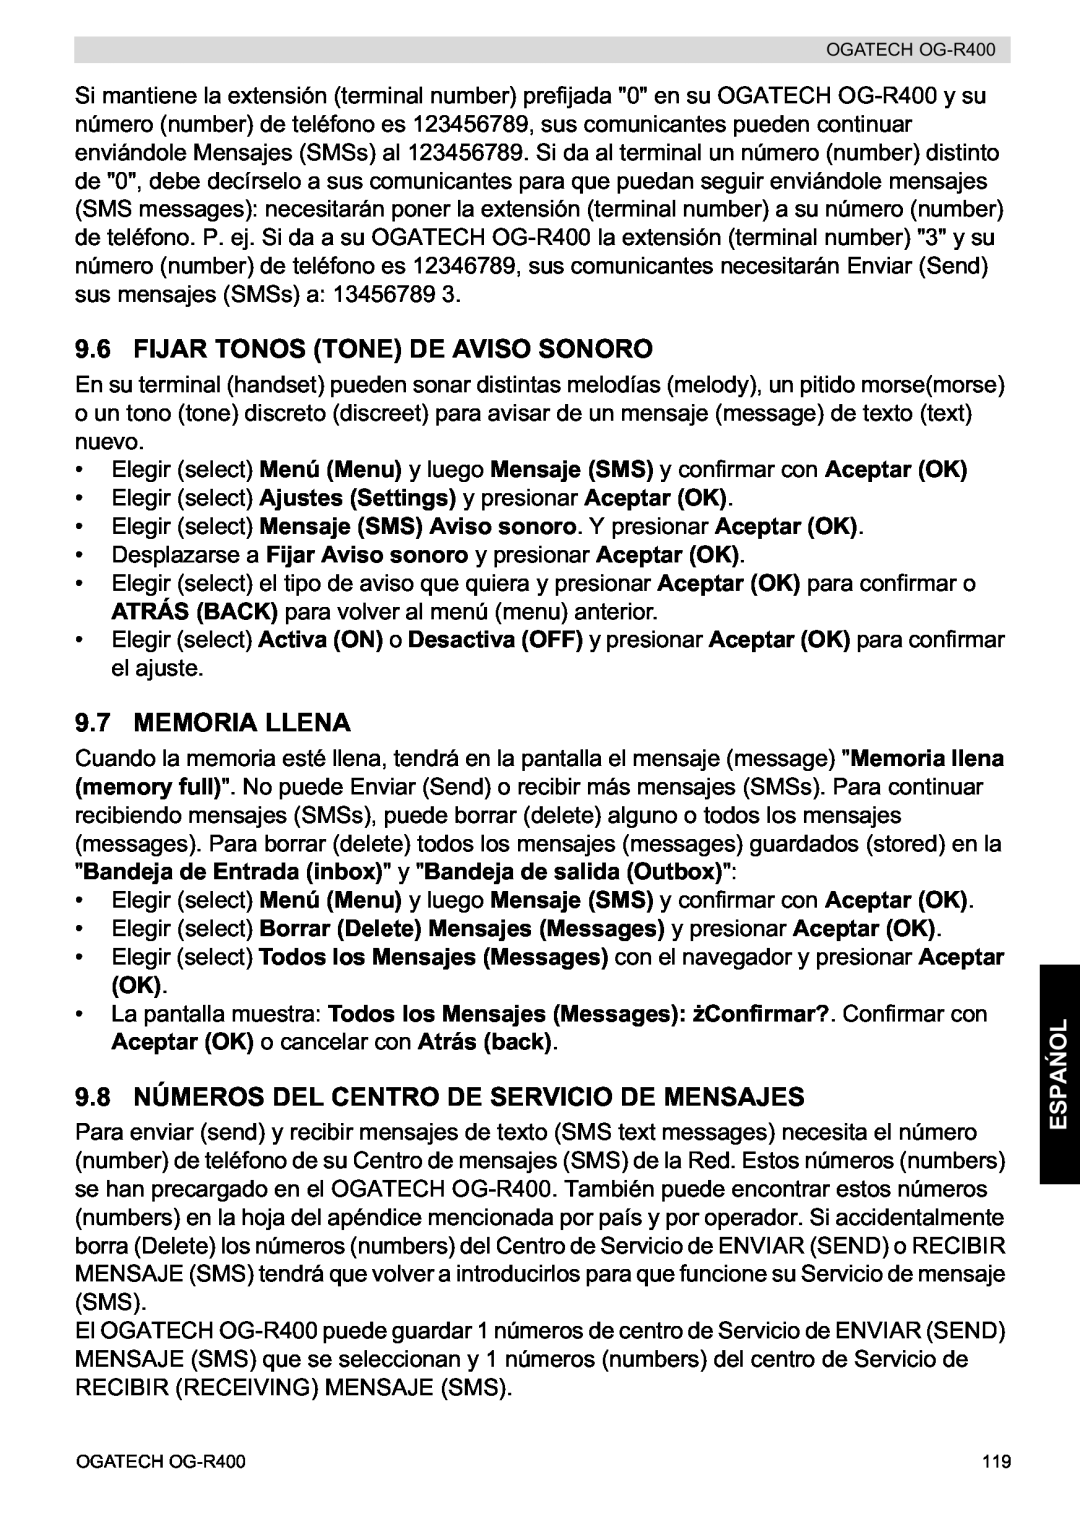 Topcom OG-R400 manual Fijar Tonos Tone De Aviso Sonoro, Memoria Llena, 9.8 NÚMEROS DEL CENTRO DE SERVICIO DE MENSAJES, Espa 